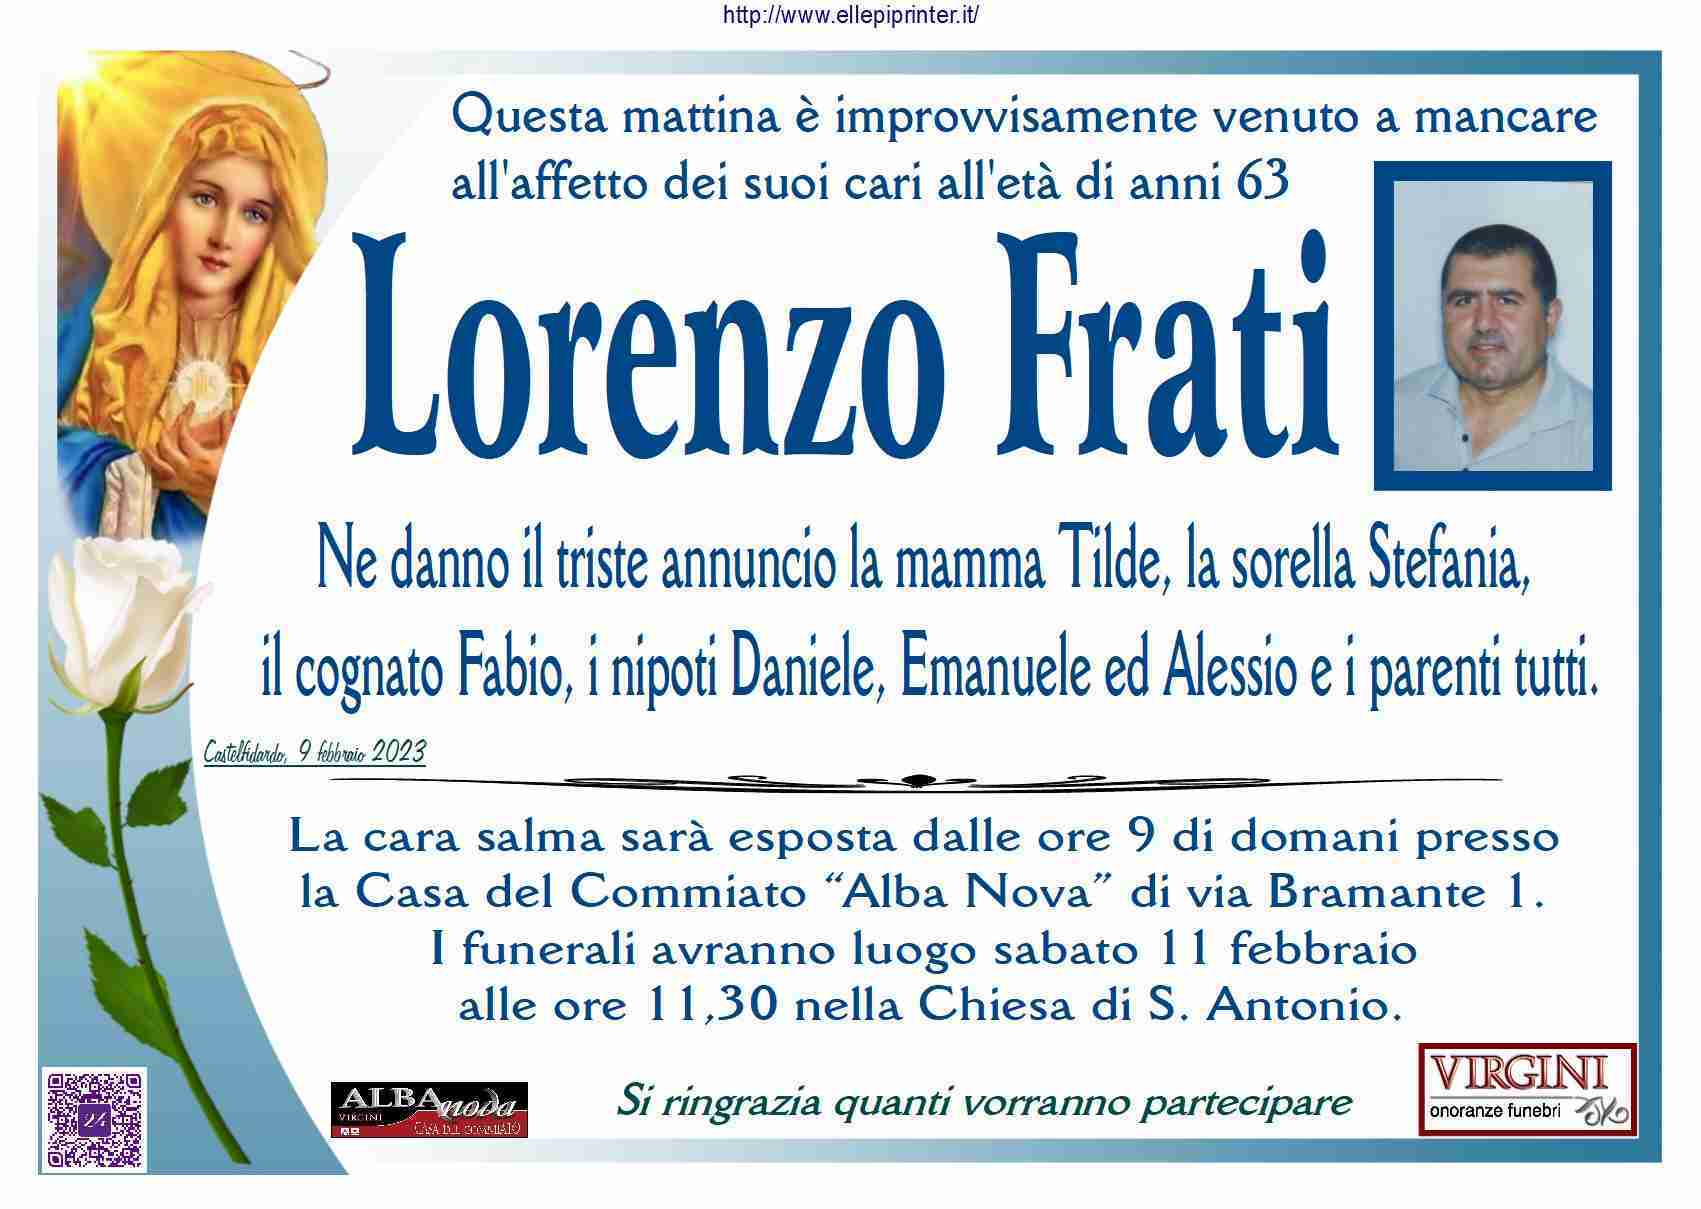 Lorenzo Frati